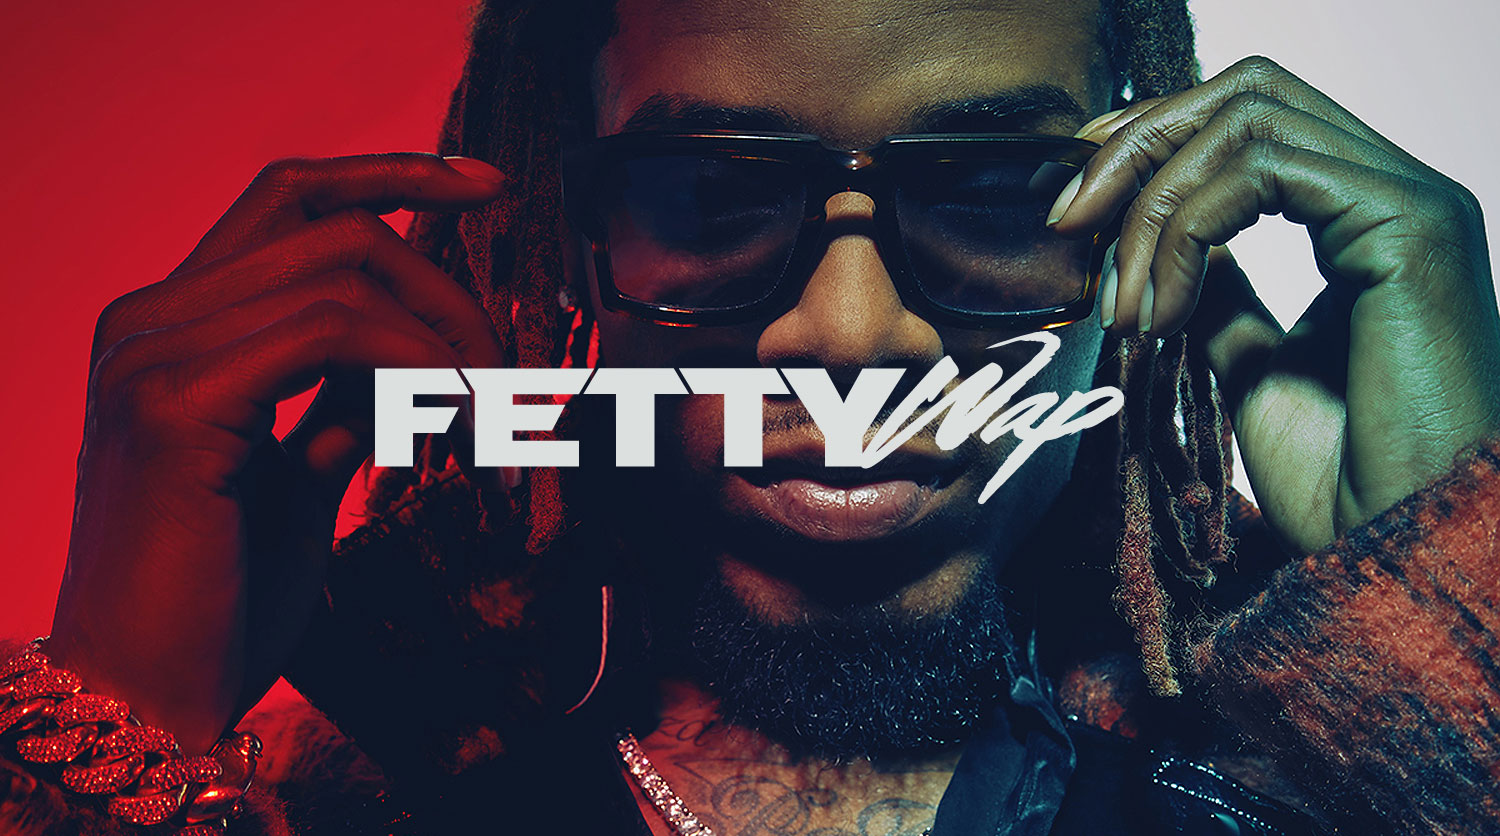 FETTY_WAP_FreshClean - Fetty Wap